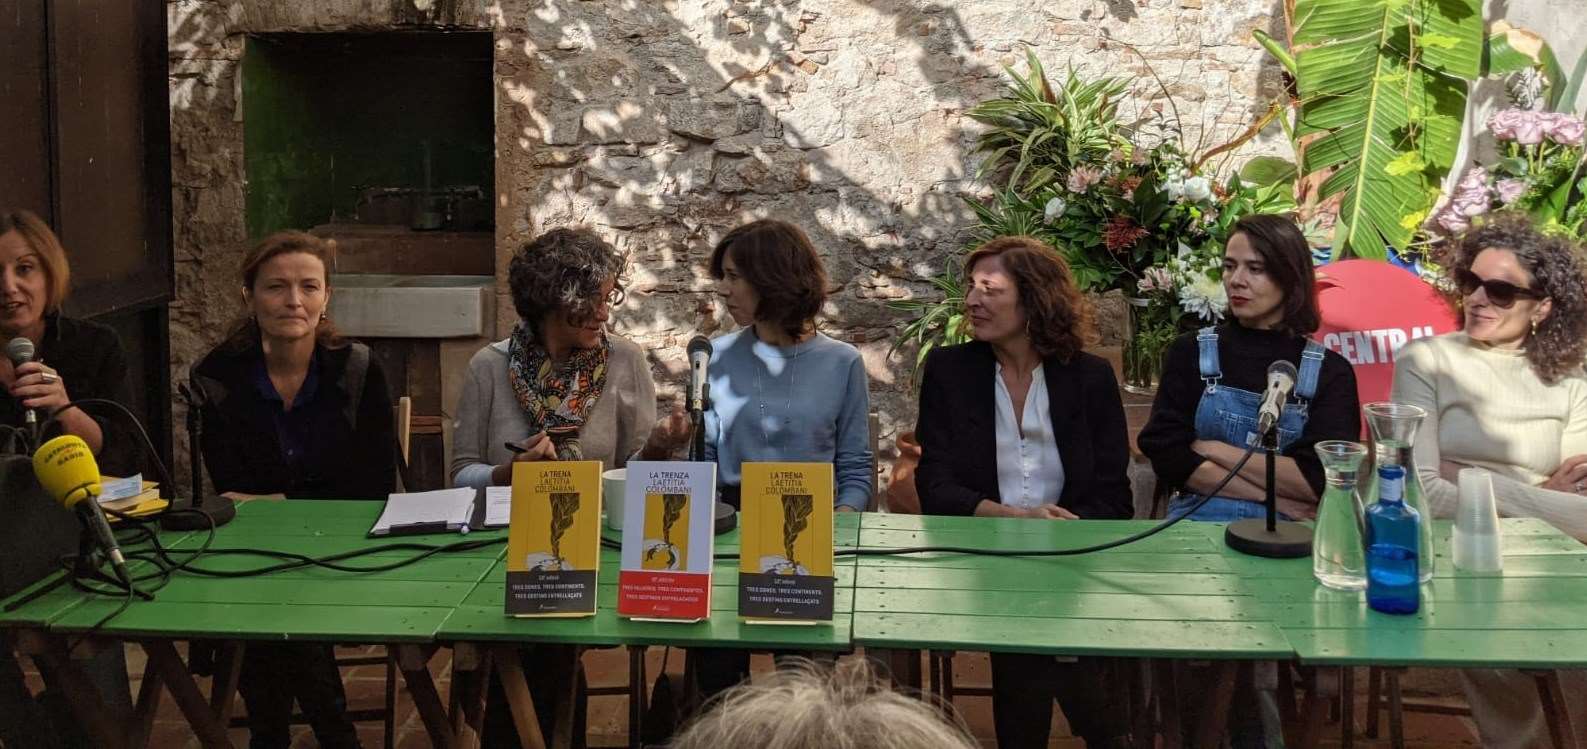 Laetitia Colombani, autora de La Trena, visita Barcelona per trobar-se amb la companyia teatral